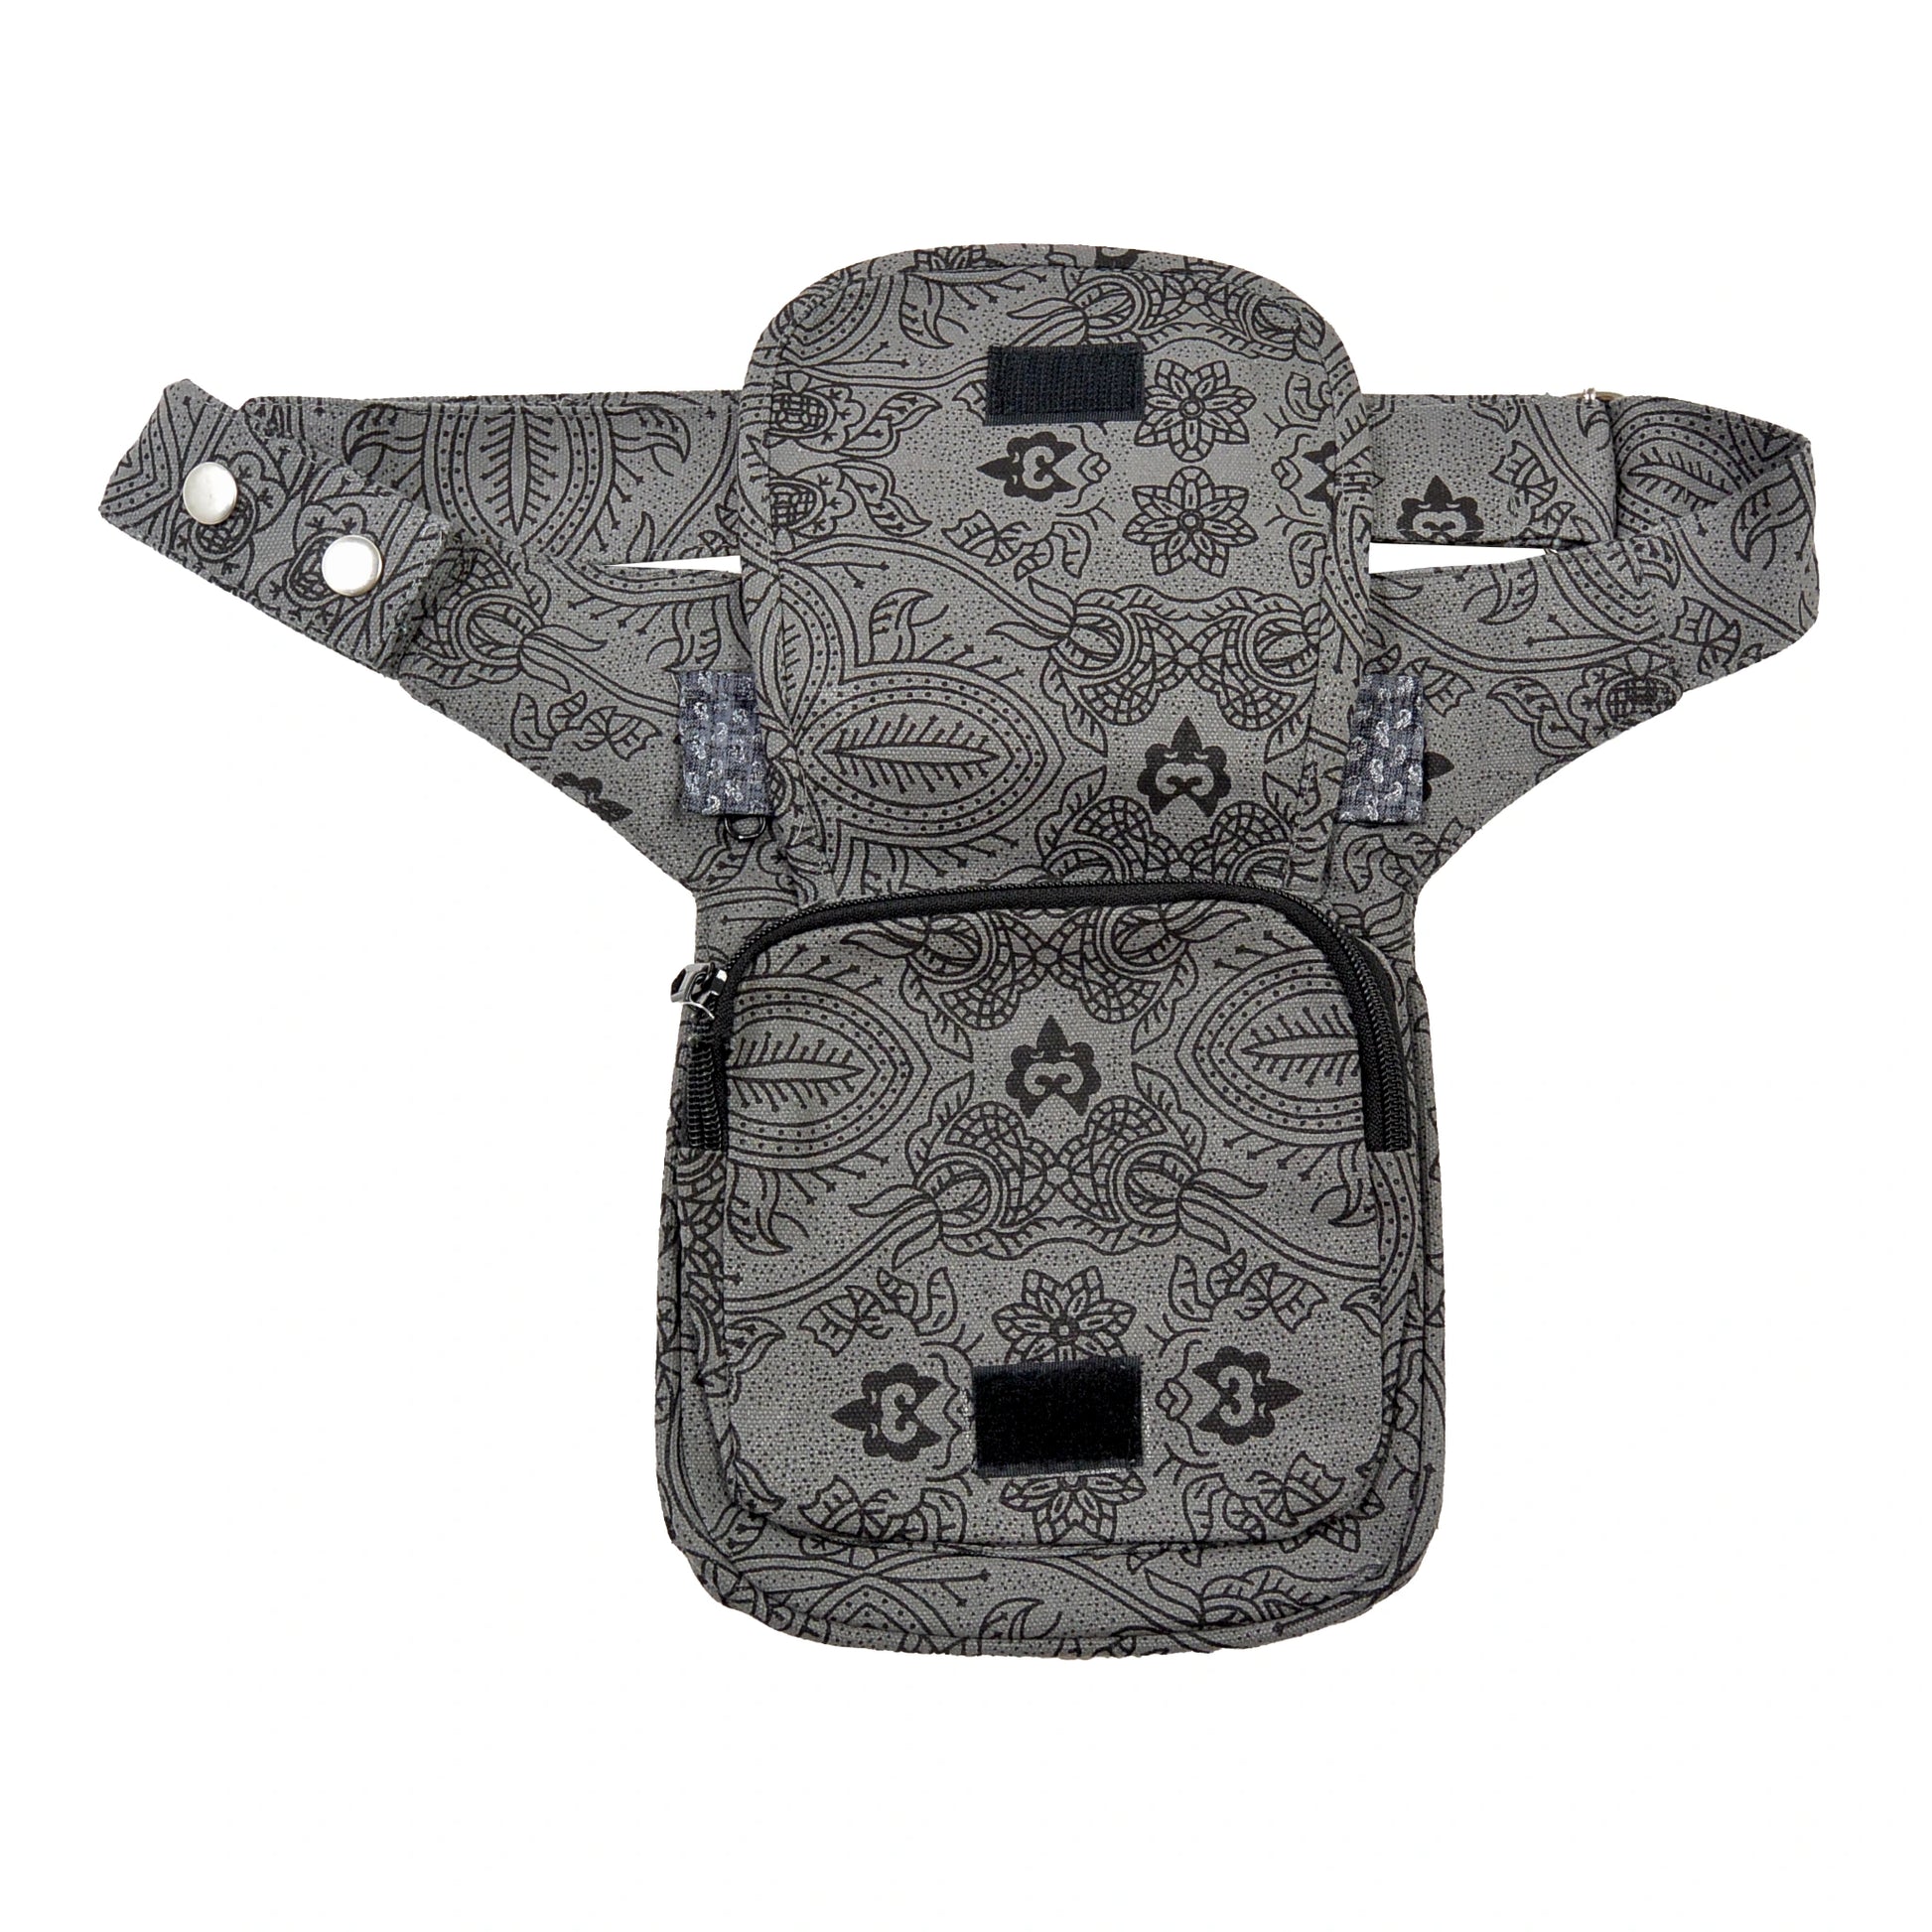 Bauchtasche Hüfttasche Stoff Baumwolle in Grau mit Ornamenten und Muster Mix. Aufgesetztes Reißverschlussfach vorne.